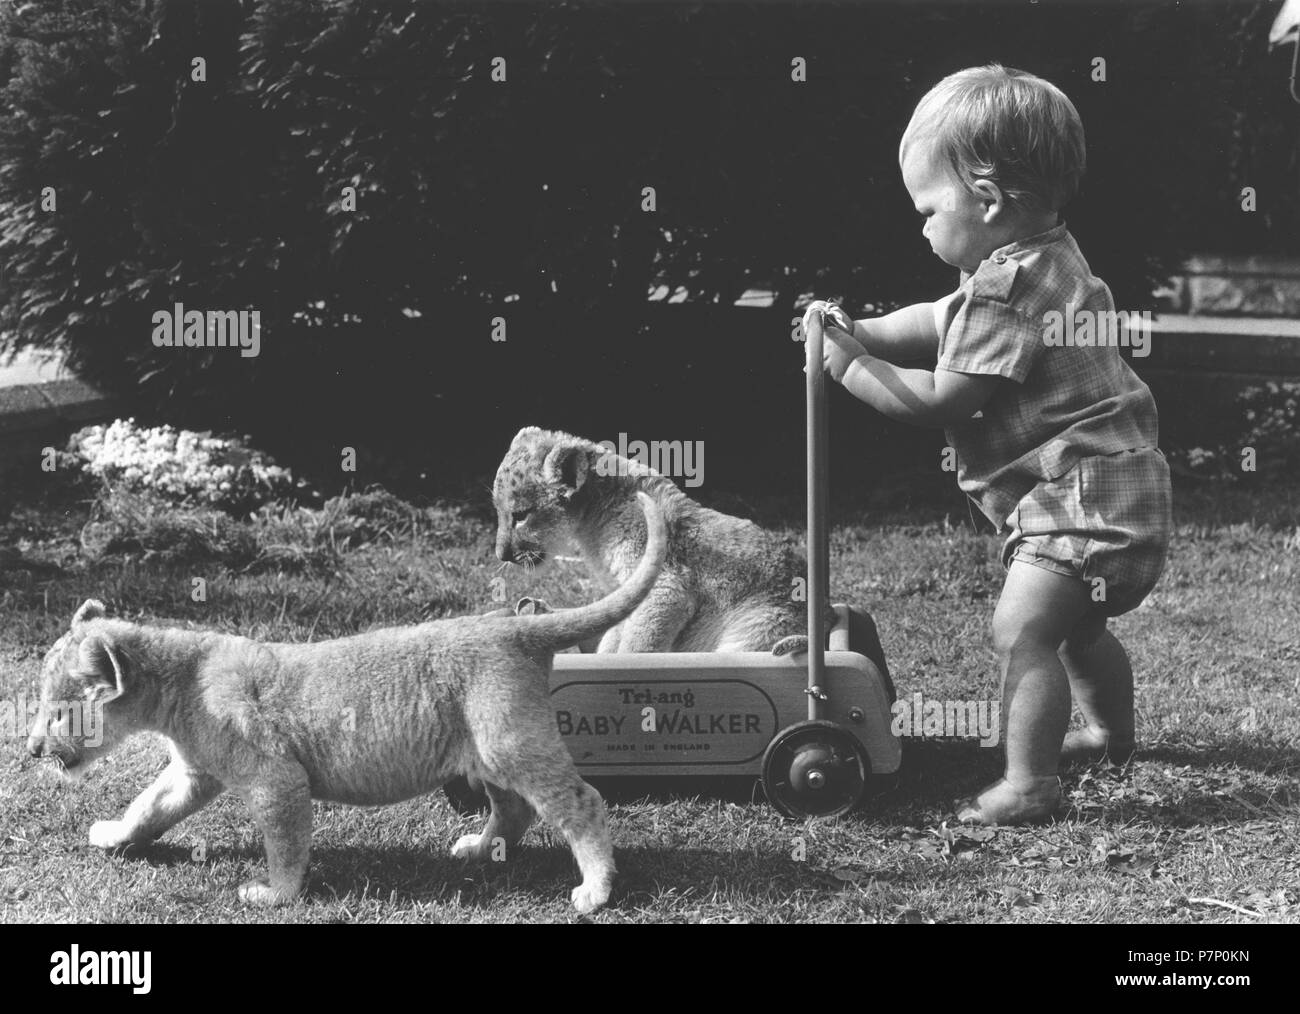 Tout-petit prédateur joue avec les bébés, Angleterre, Grande-Bretagne Banque D'Images